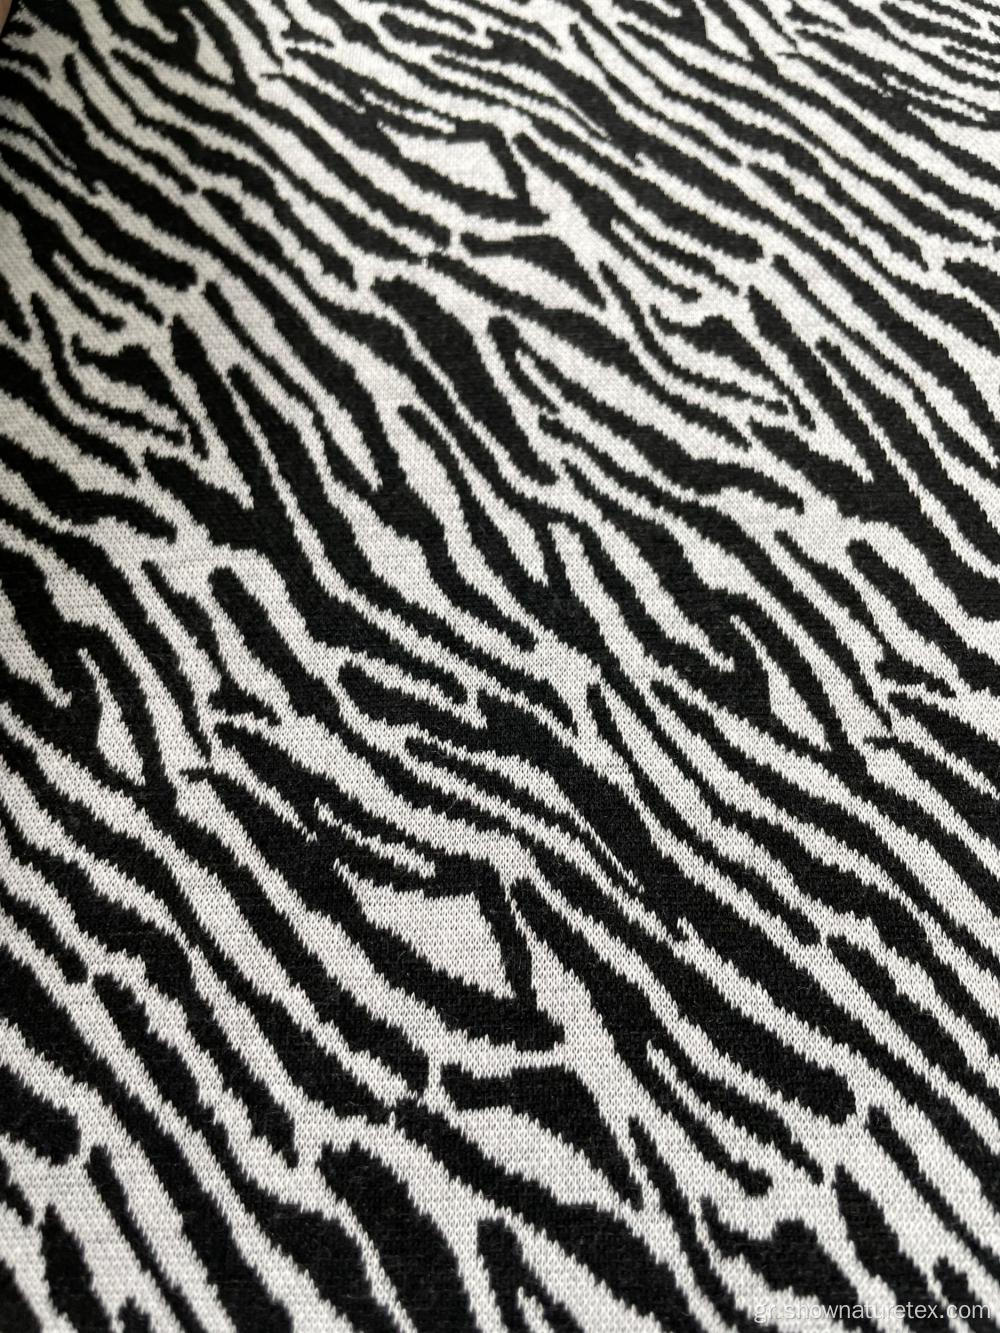 Leopard Jacquard Knit Fabric